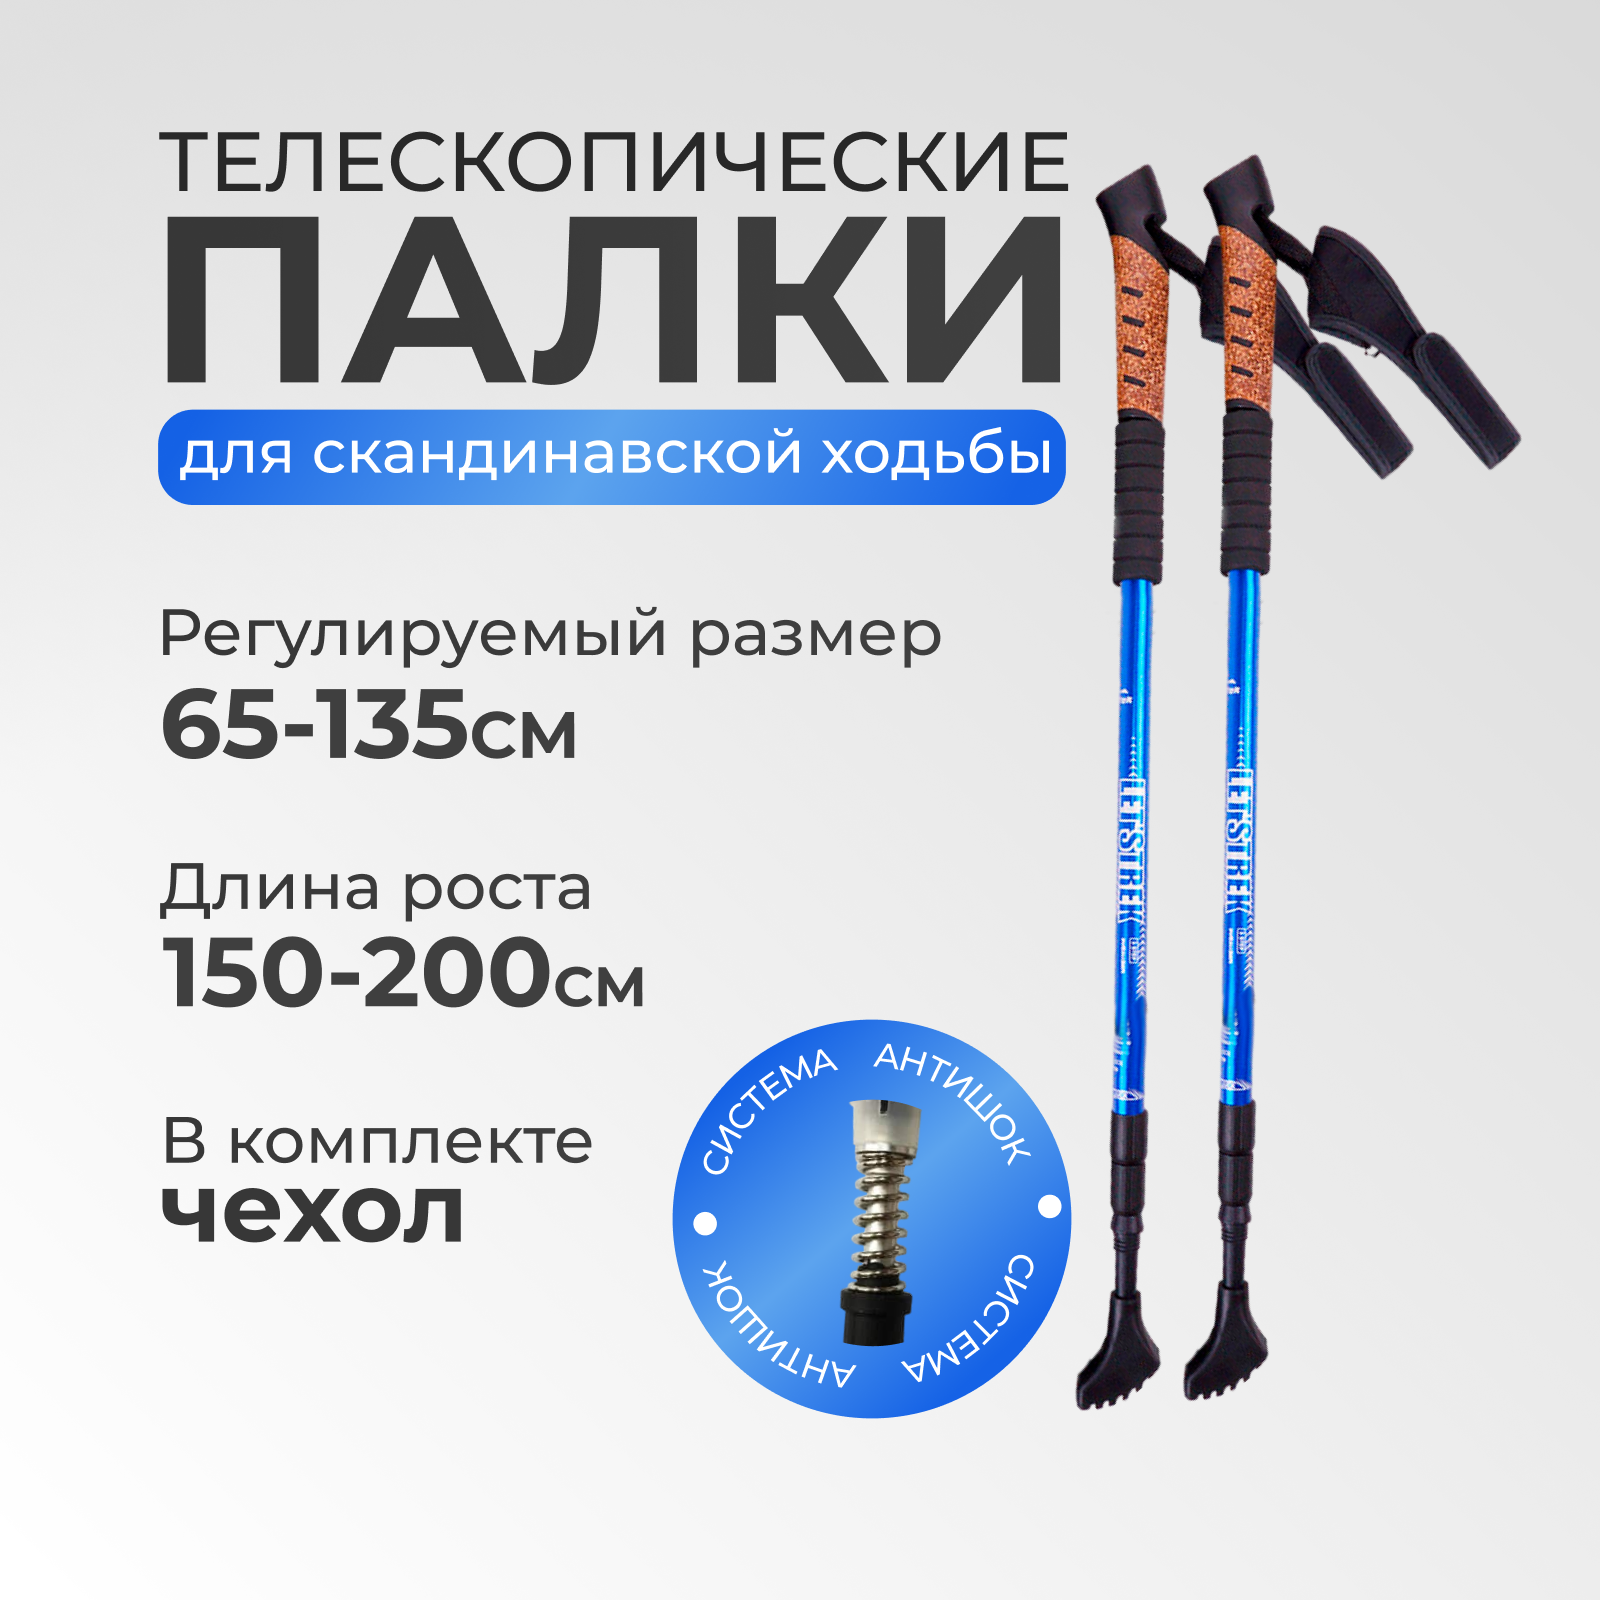 Палки для скандинавской ходьбы 65-135 см складные телескопические, спортивный инвентарь для похода и активного отдыха, синий